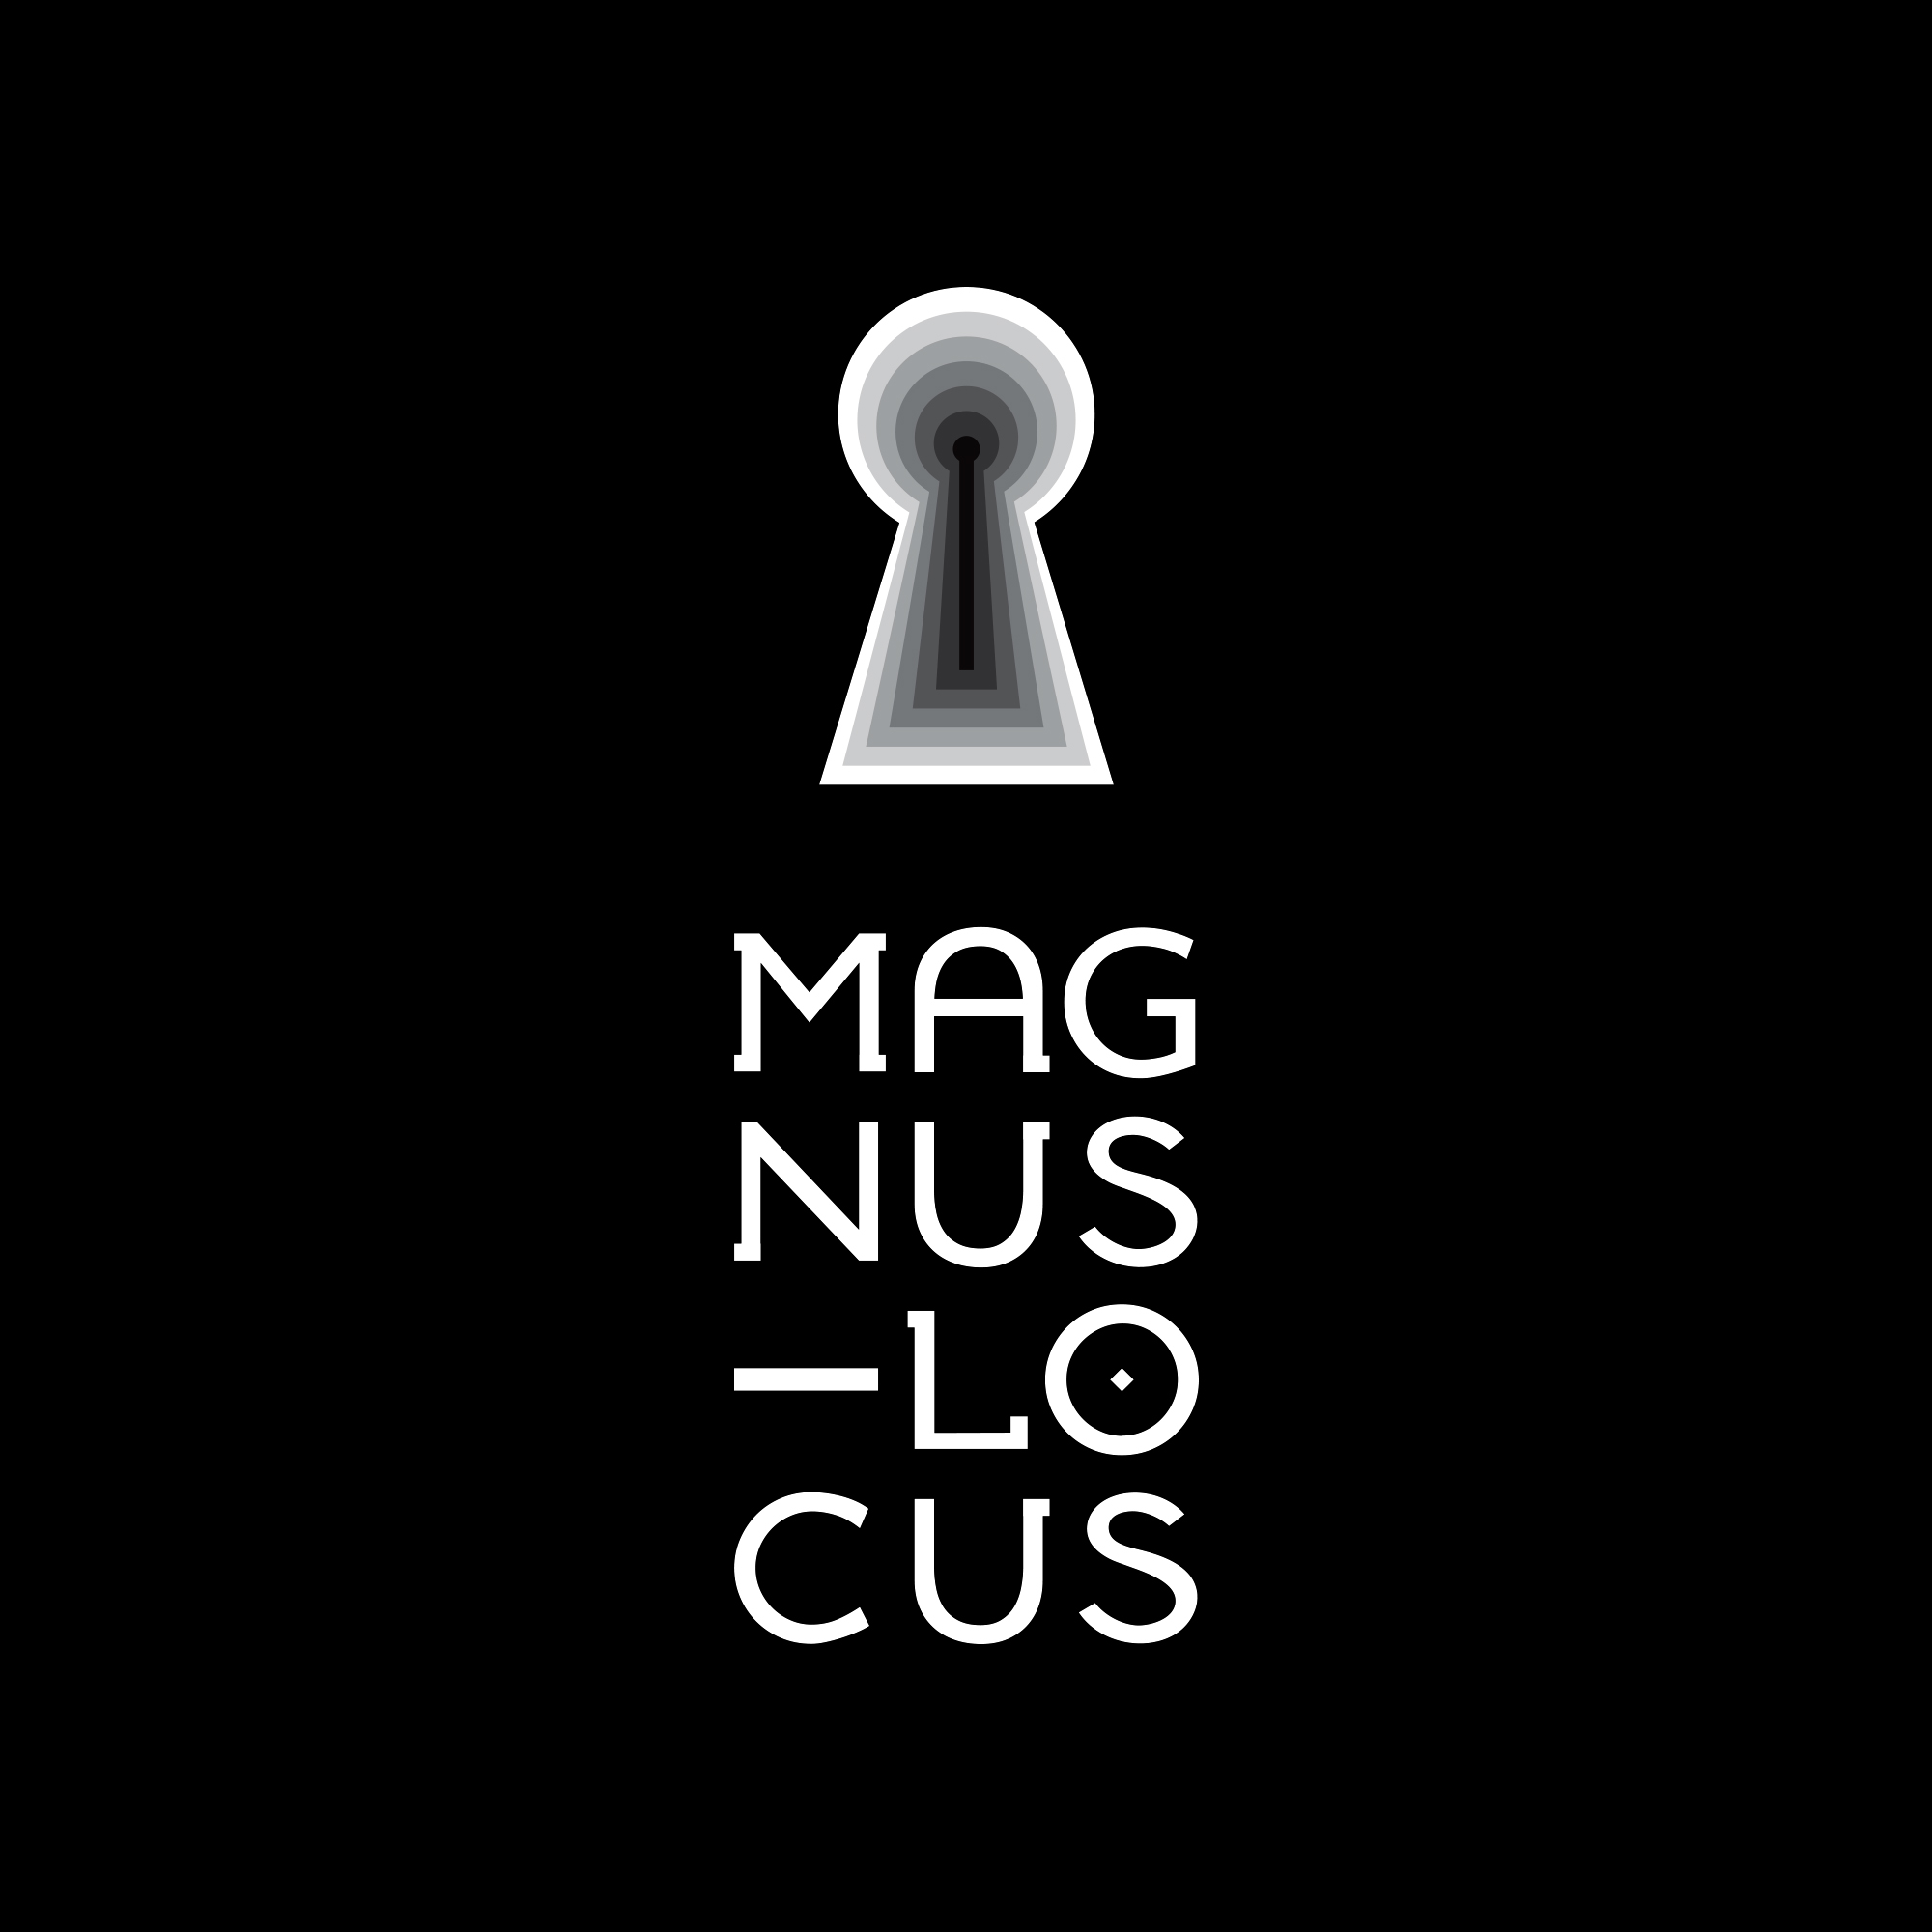 Magnus Locus